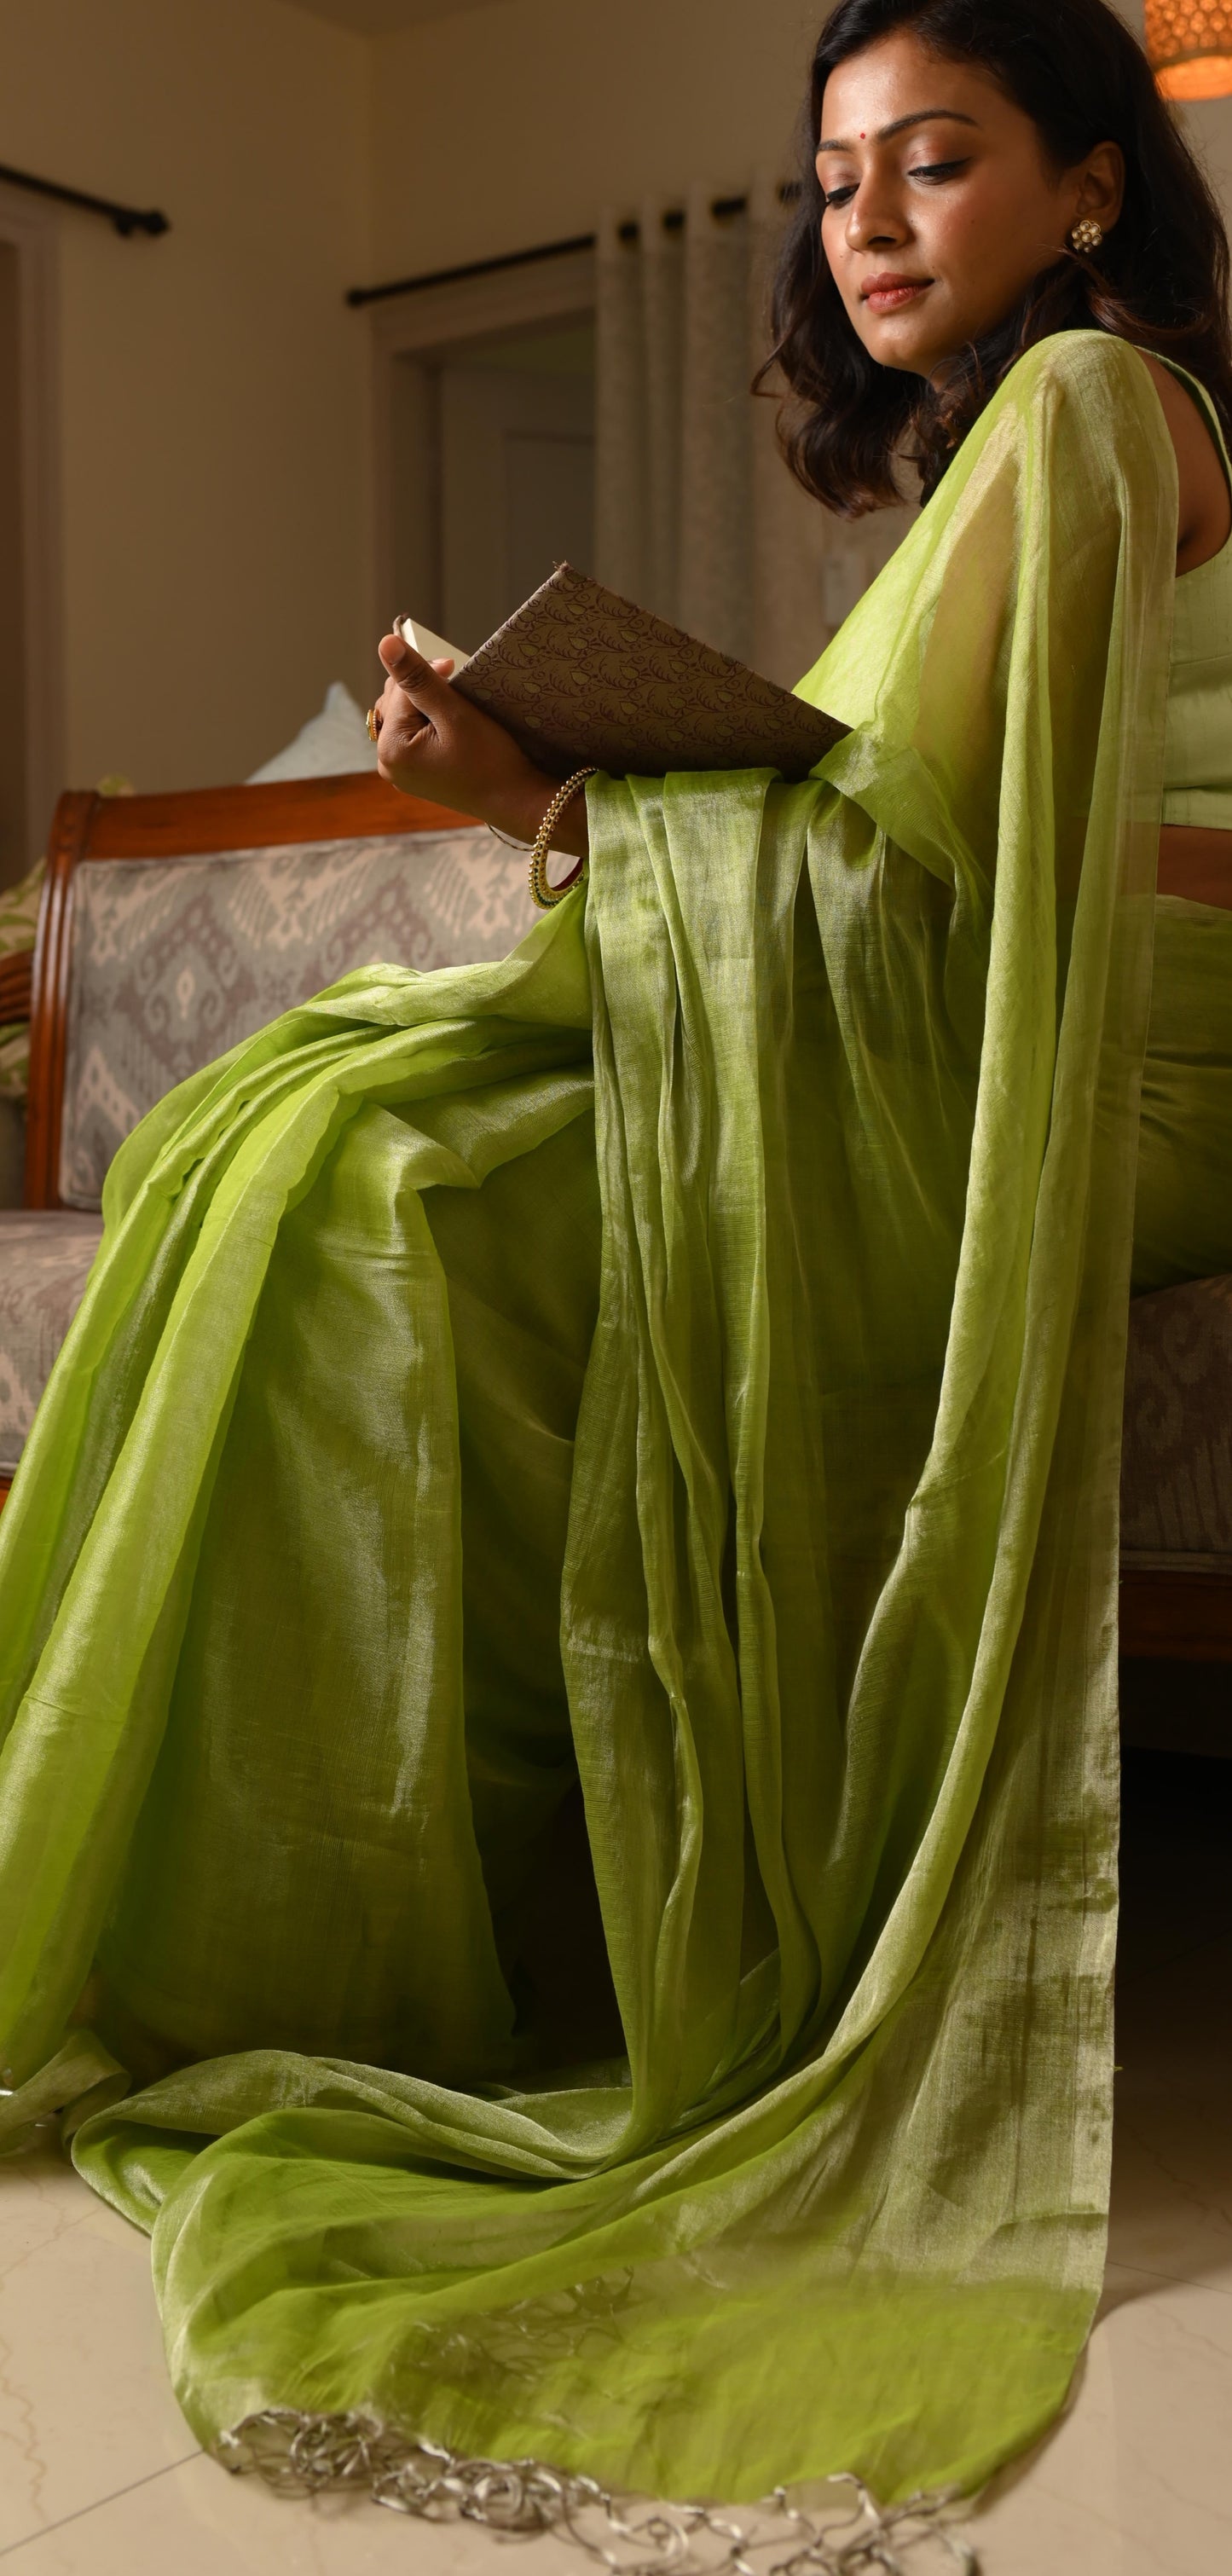 Tissue silk saree - Mint Green